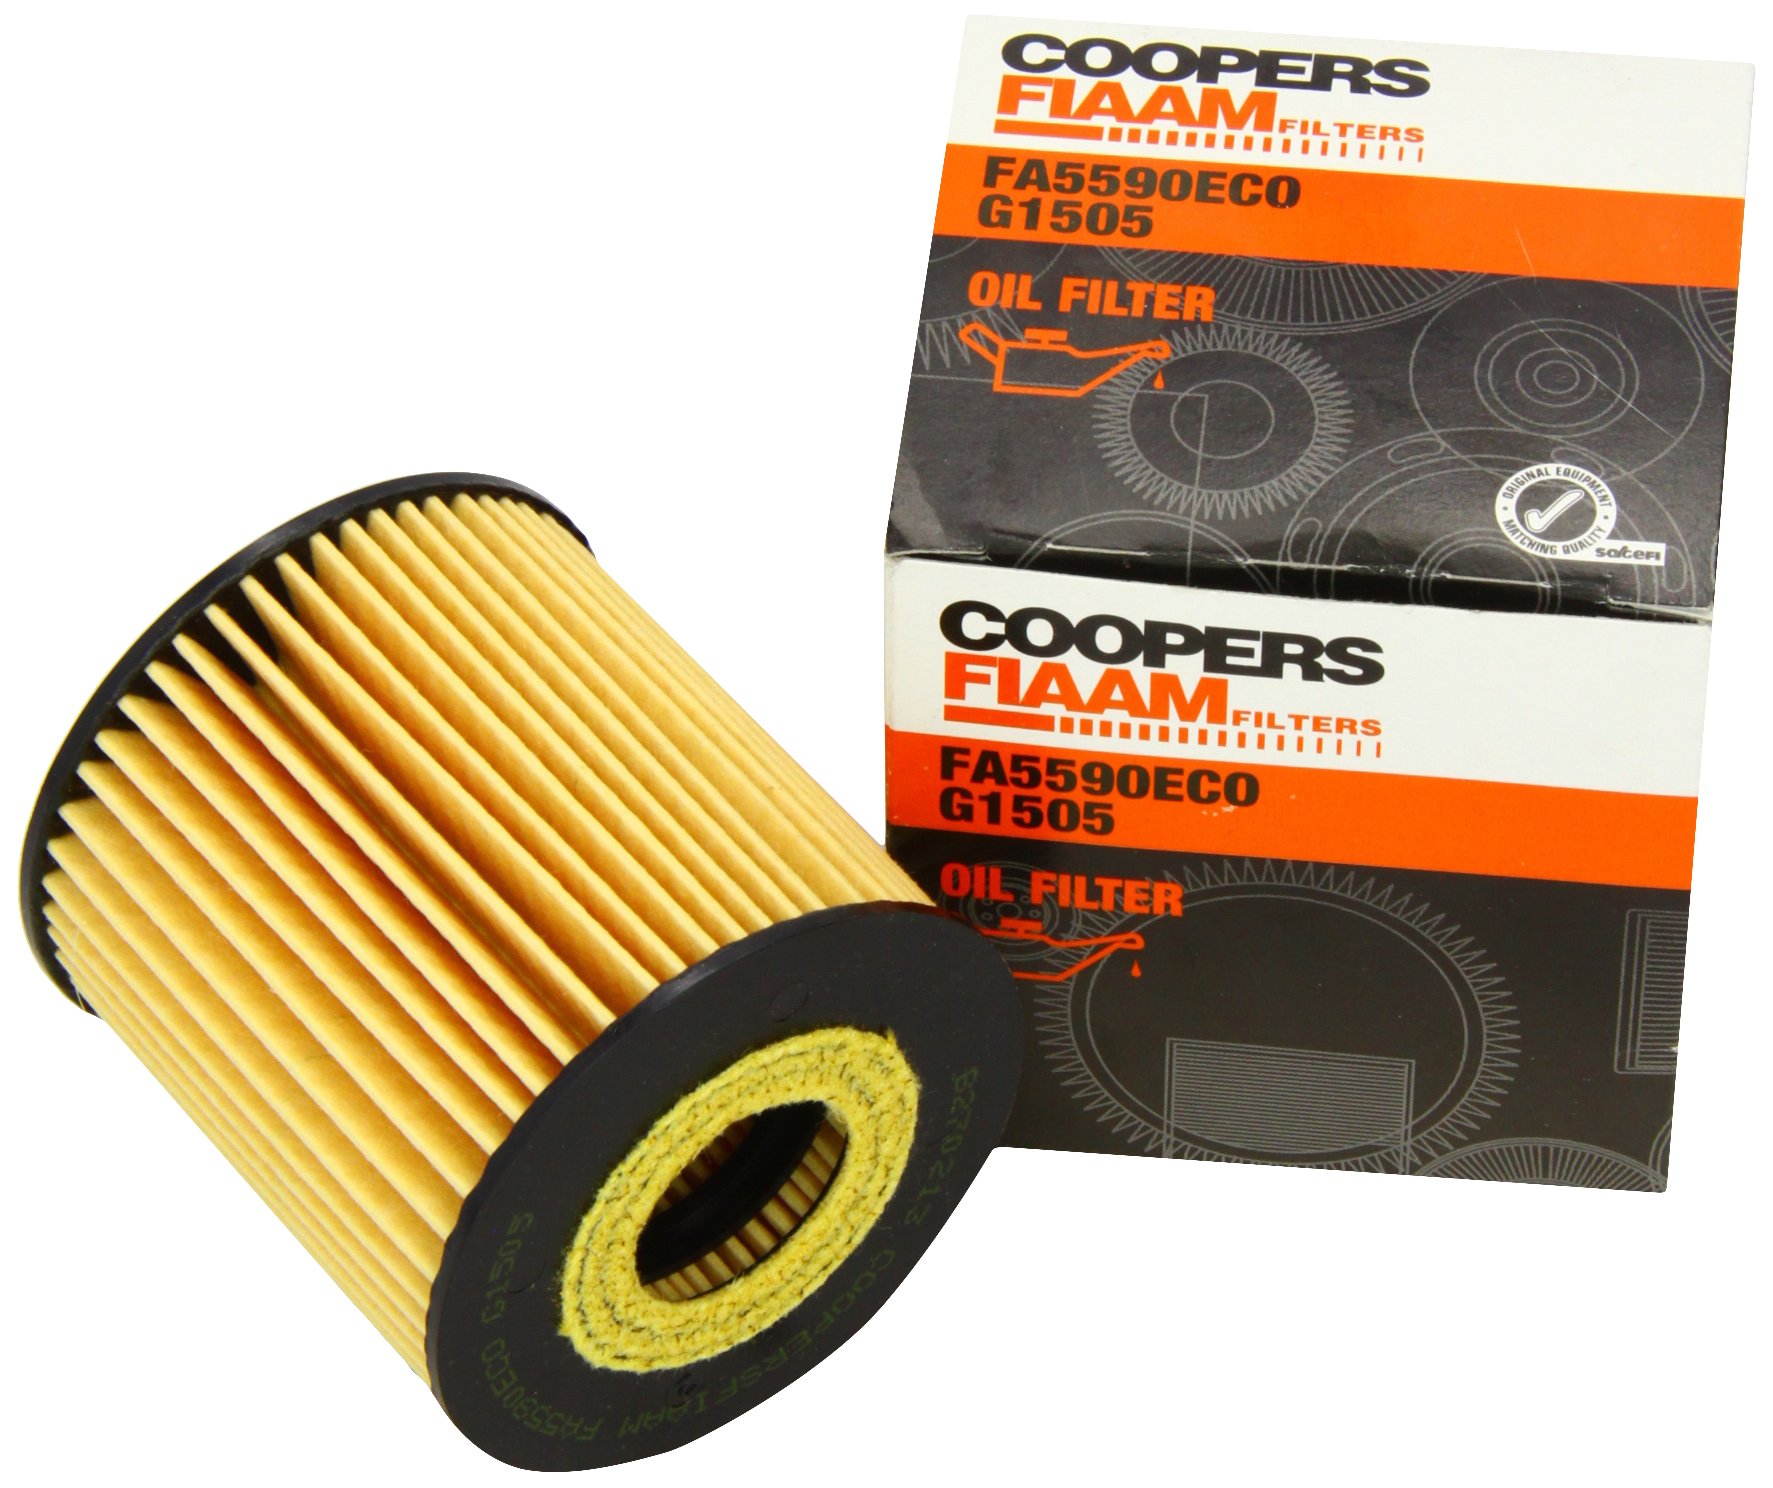 Coopersfiaam Filters Fa5590Eco Motorölfilter Filter Ölfilter für 11422247392, 11428513375, 93183318 von Autoteile Gocht